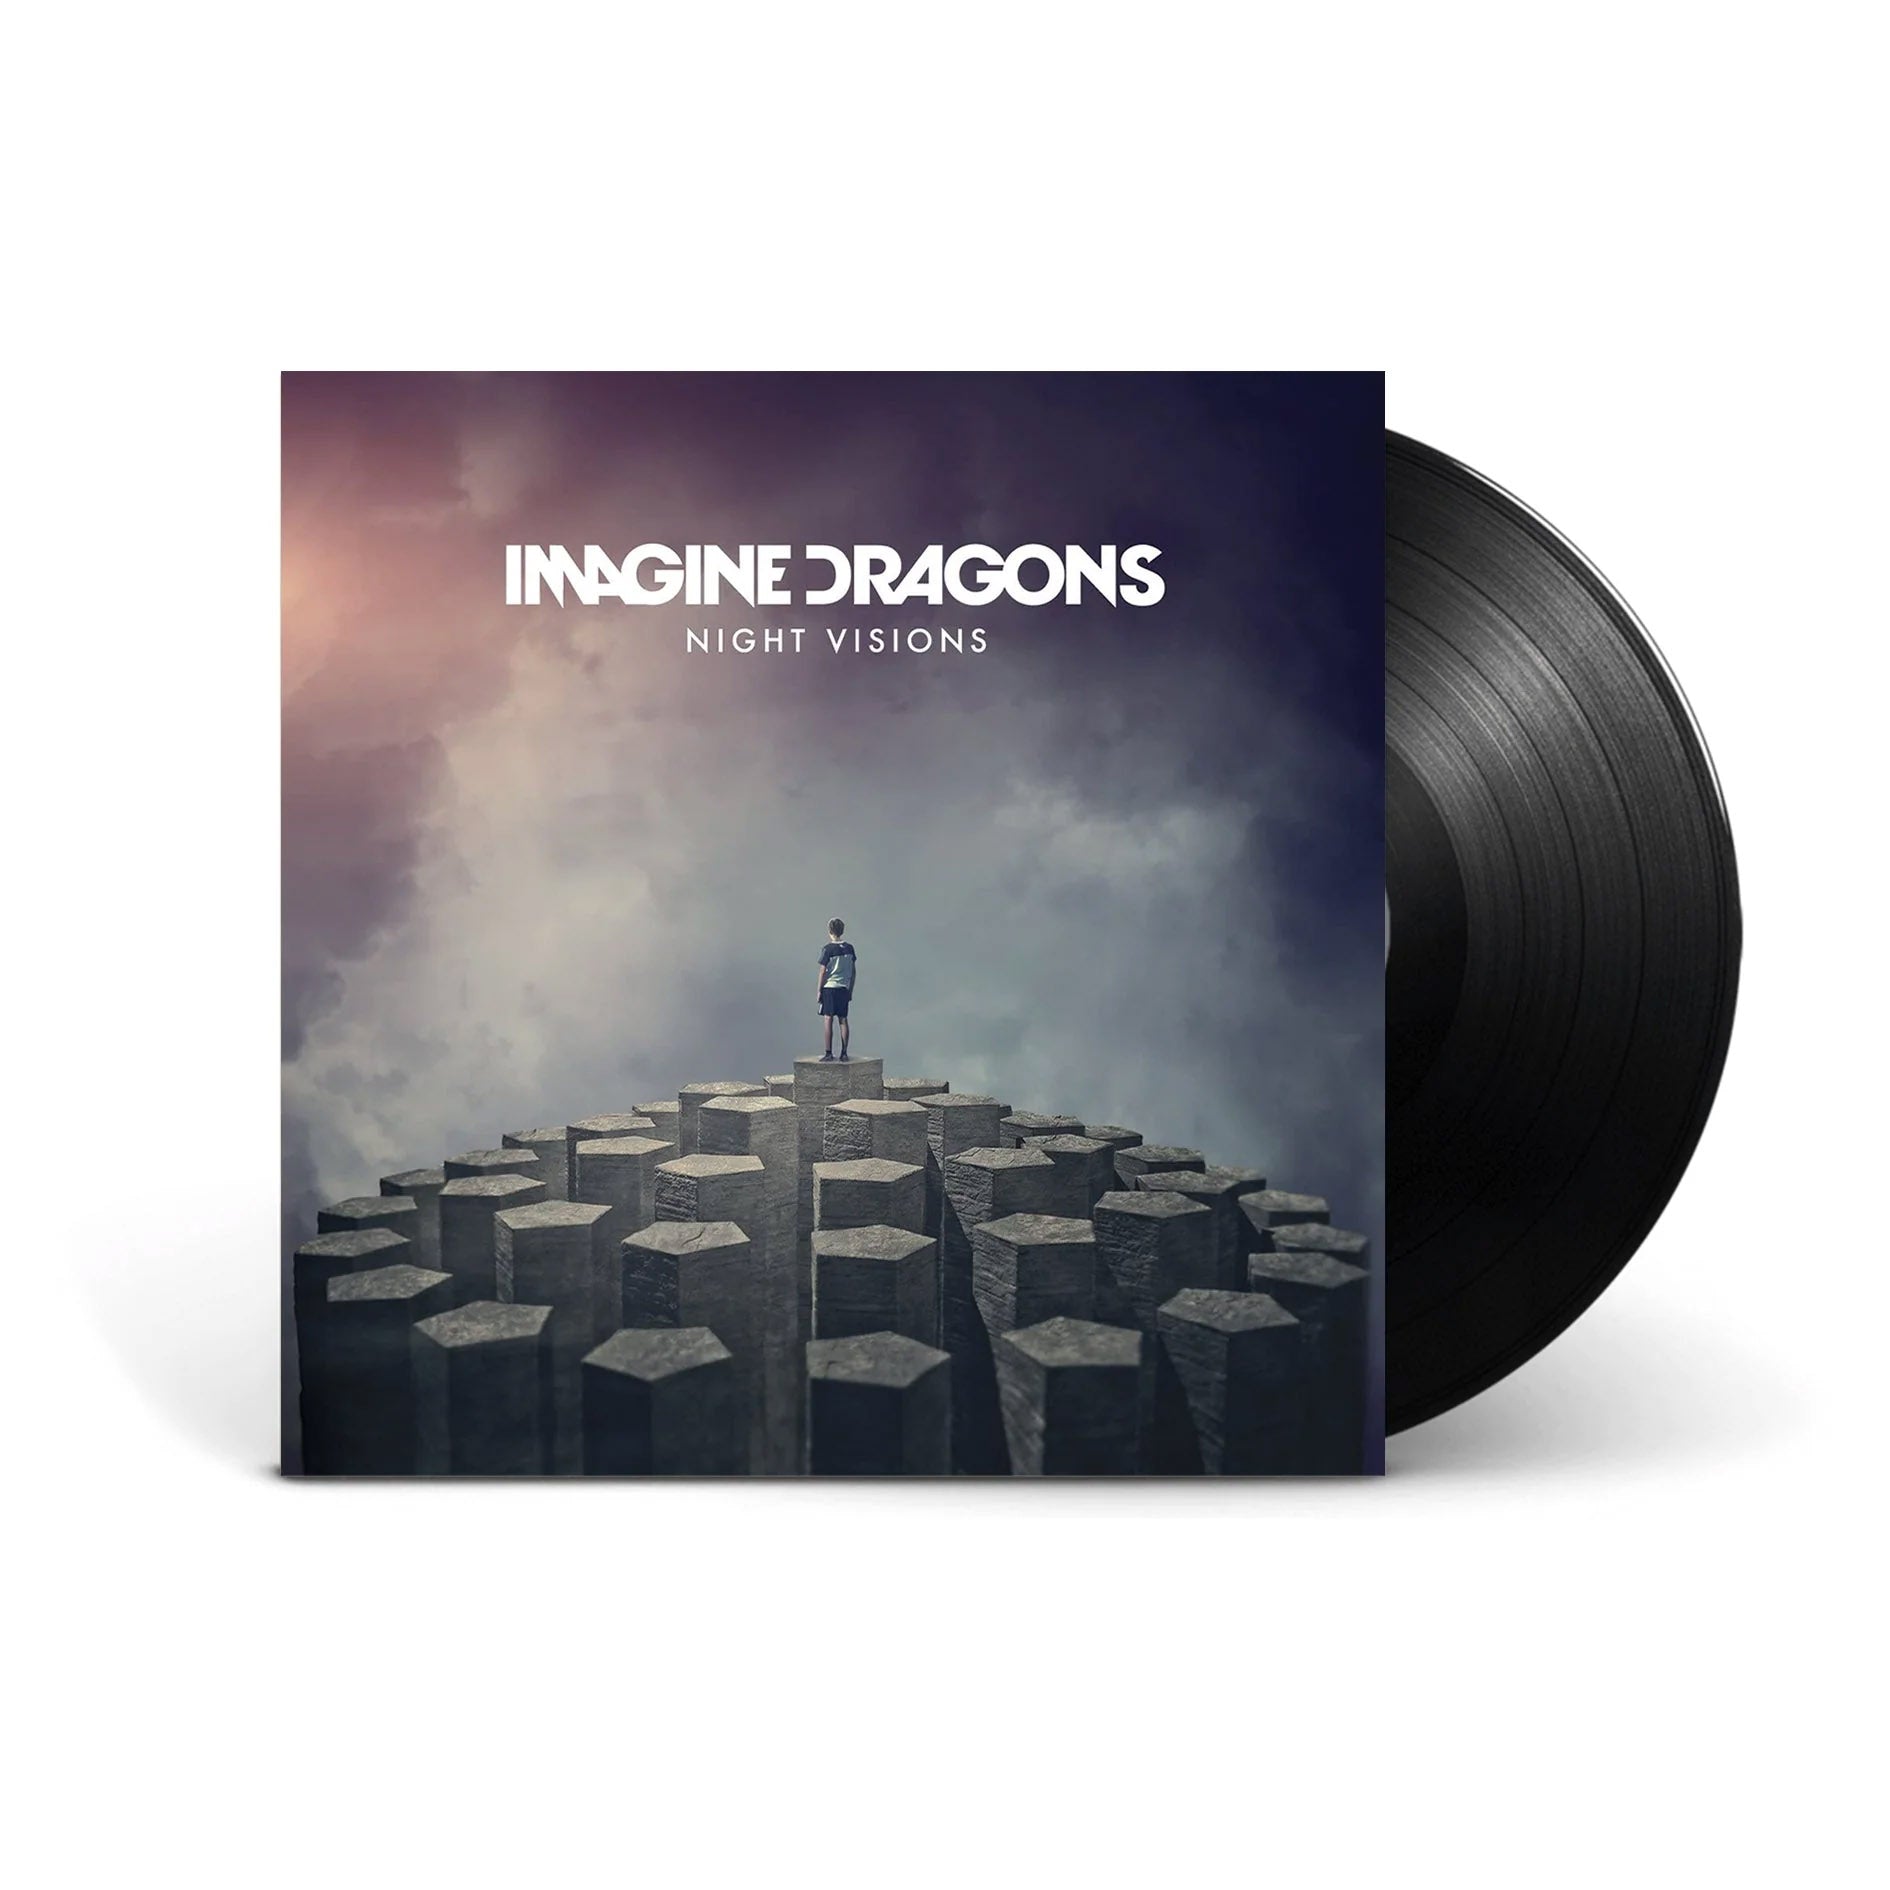 Imagine Dragons – Store Universal Music Store